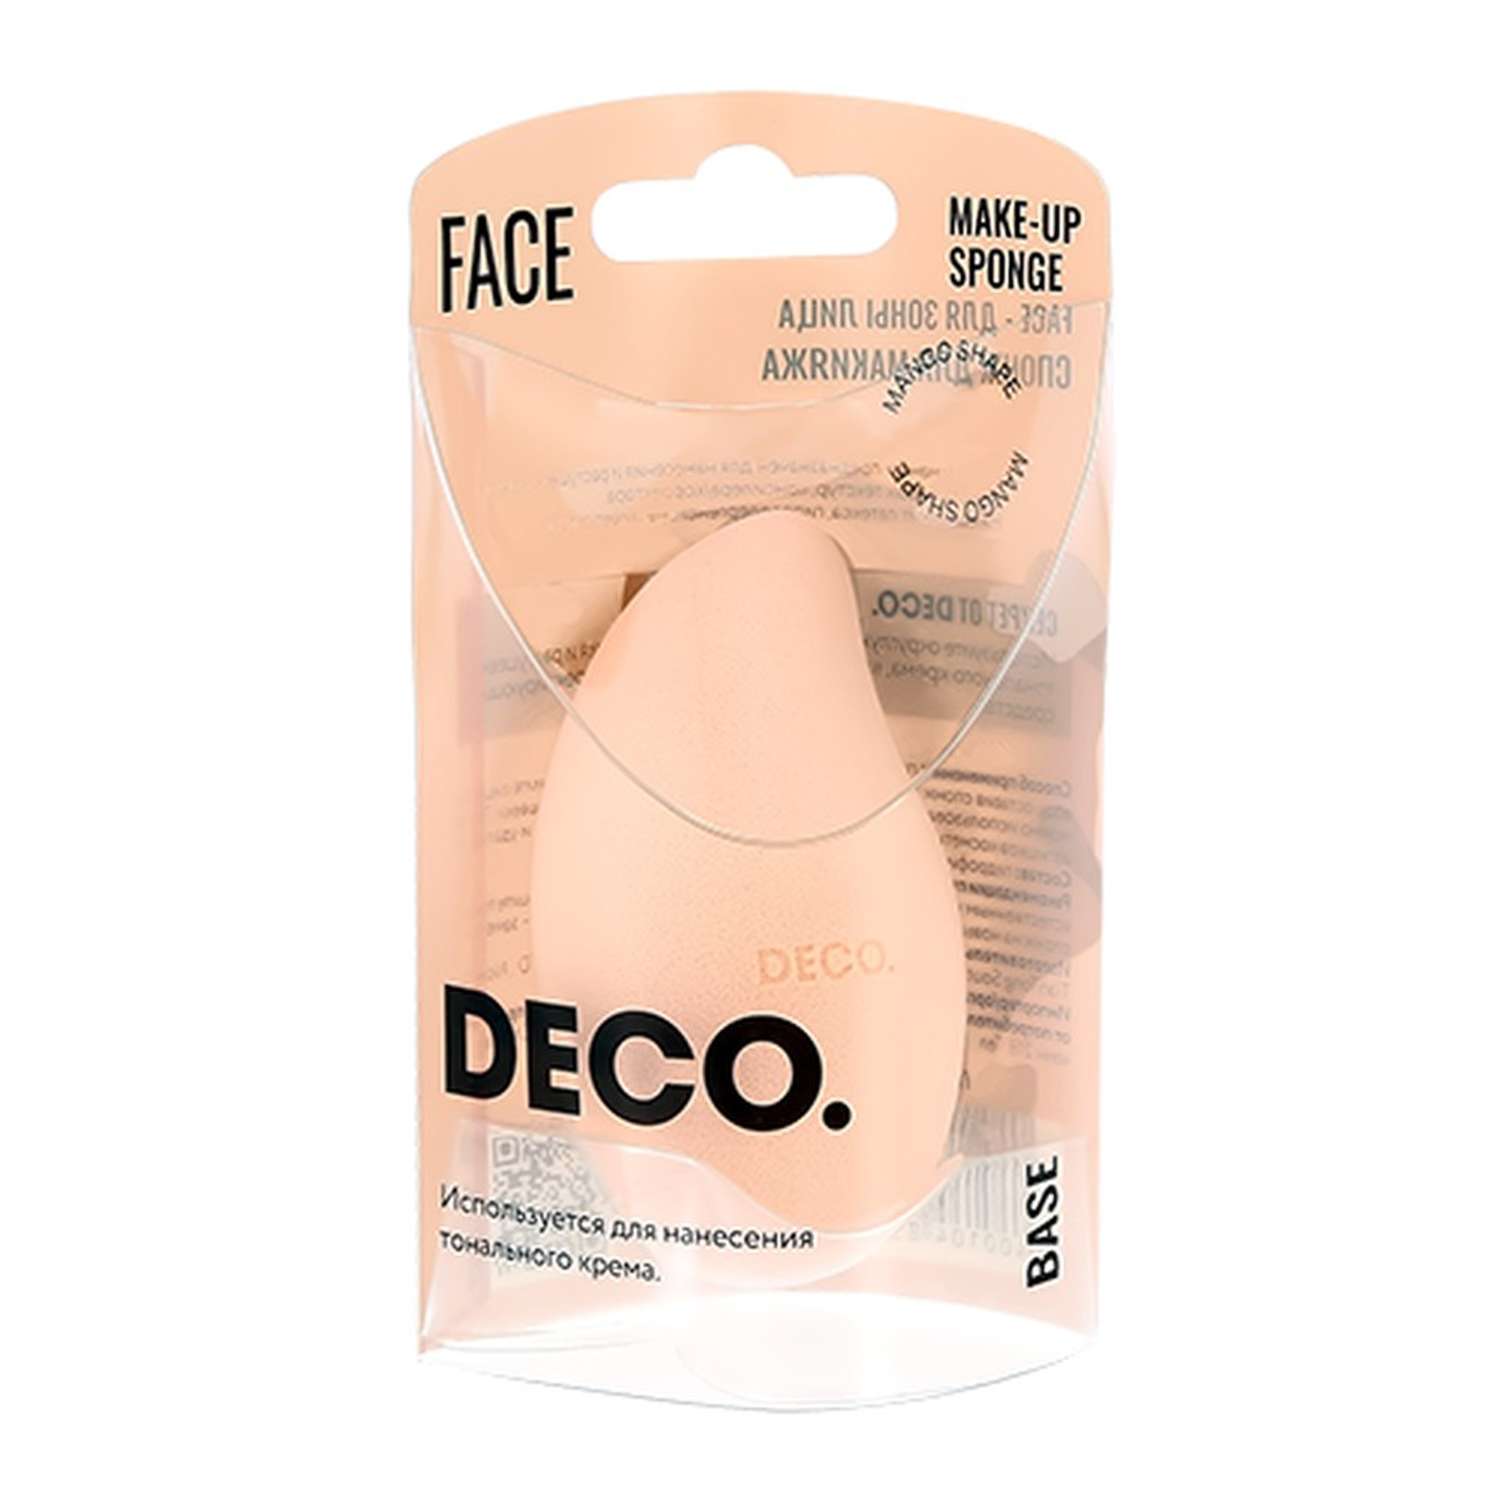 Спонж DECO. для макияжа base mango - фото 4